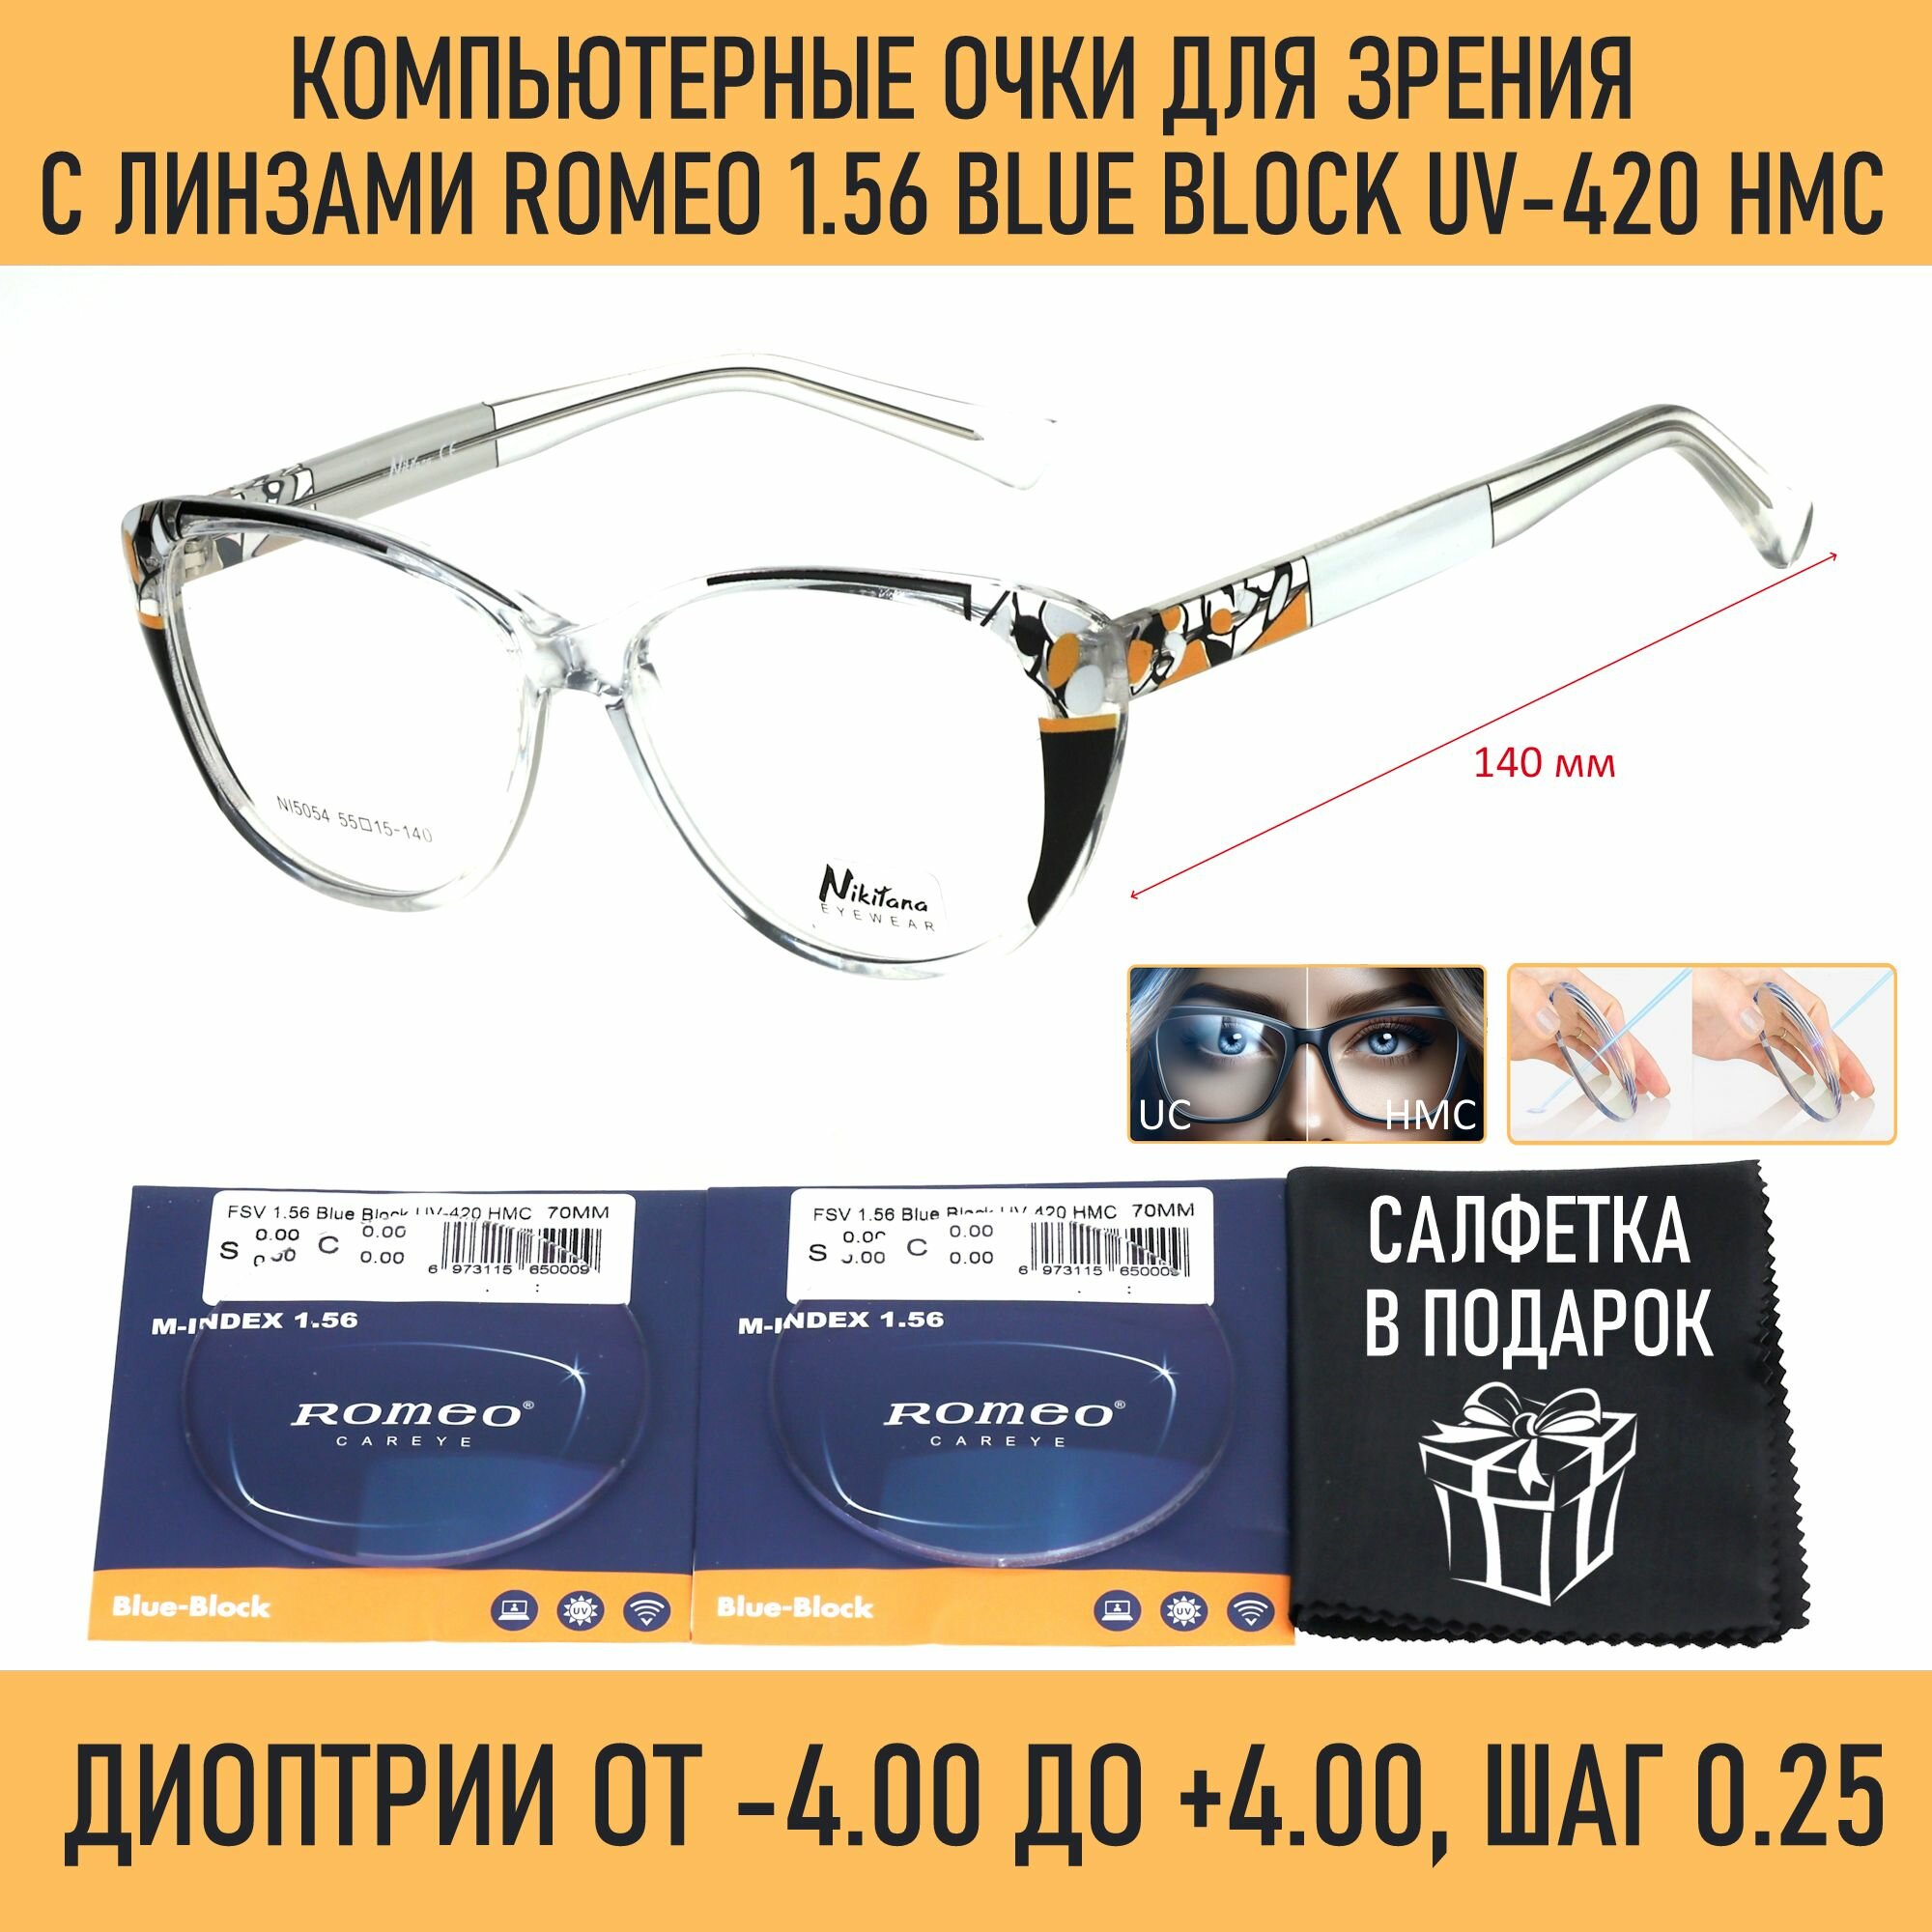 Компьютерные очки для зрения NIKITANA мод. 5054 Цвет 1 с линзами ROMEO 1.56 Blue Block -1.75 РЦ 62-64